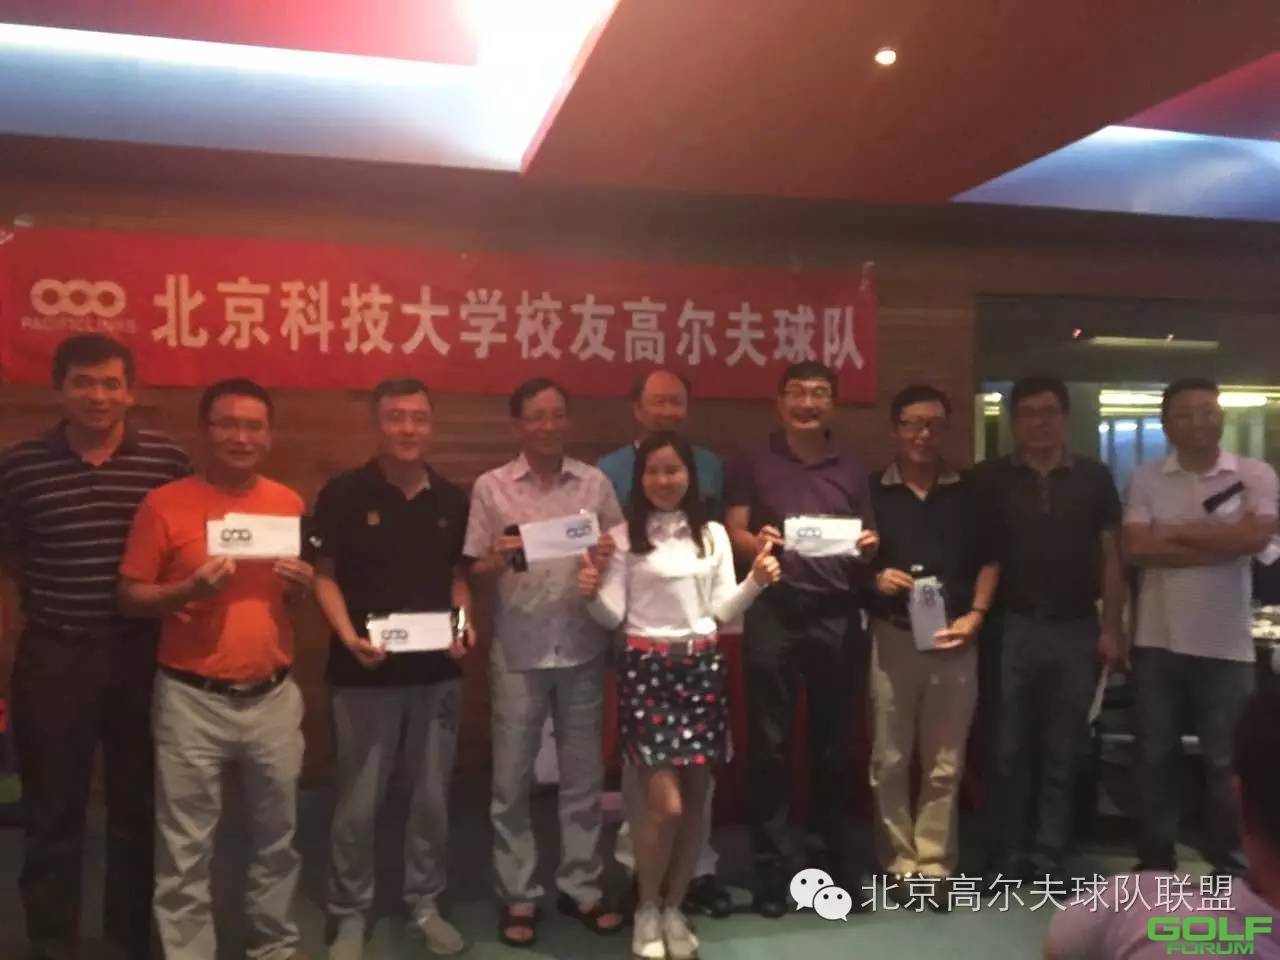 北京科技大学校友高尔夫球队第二届联谊赛暨6月份月例赛 ...